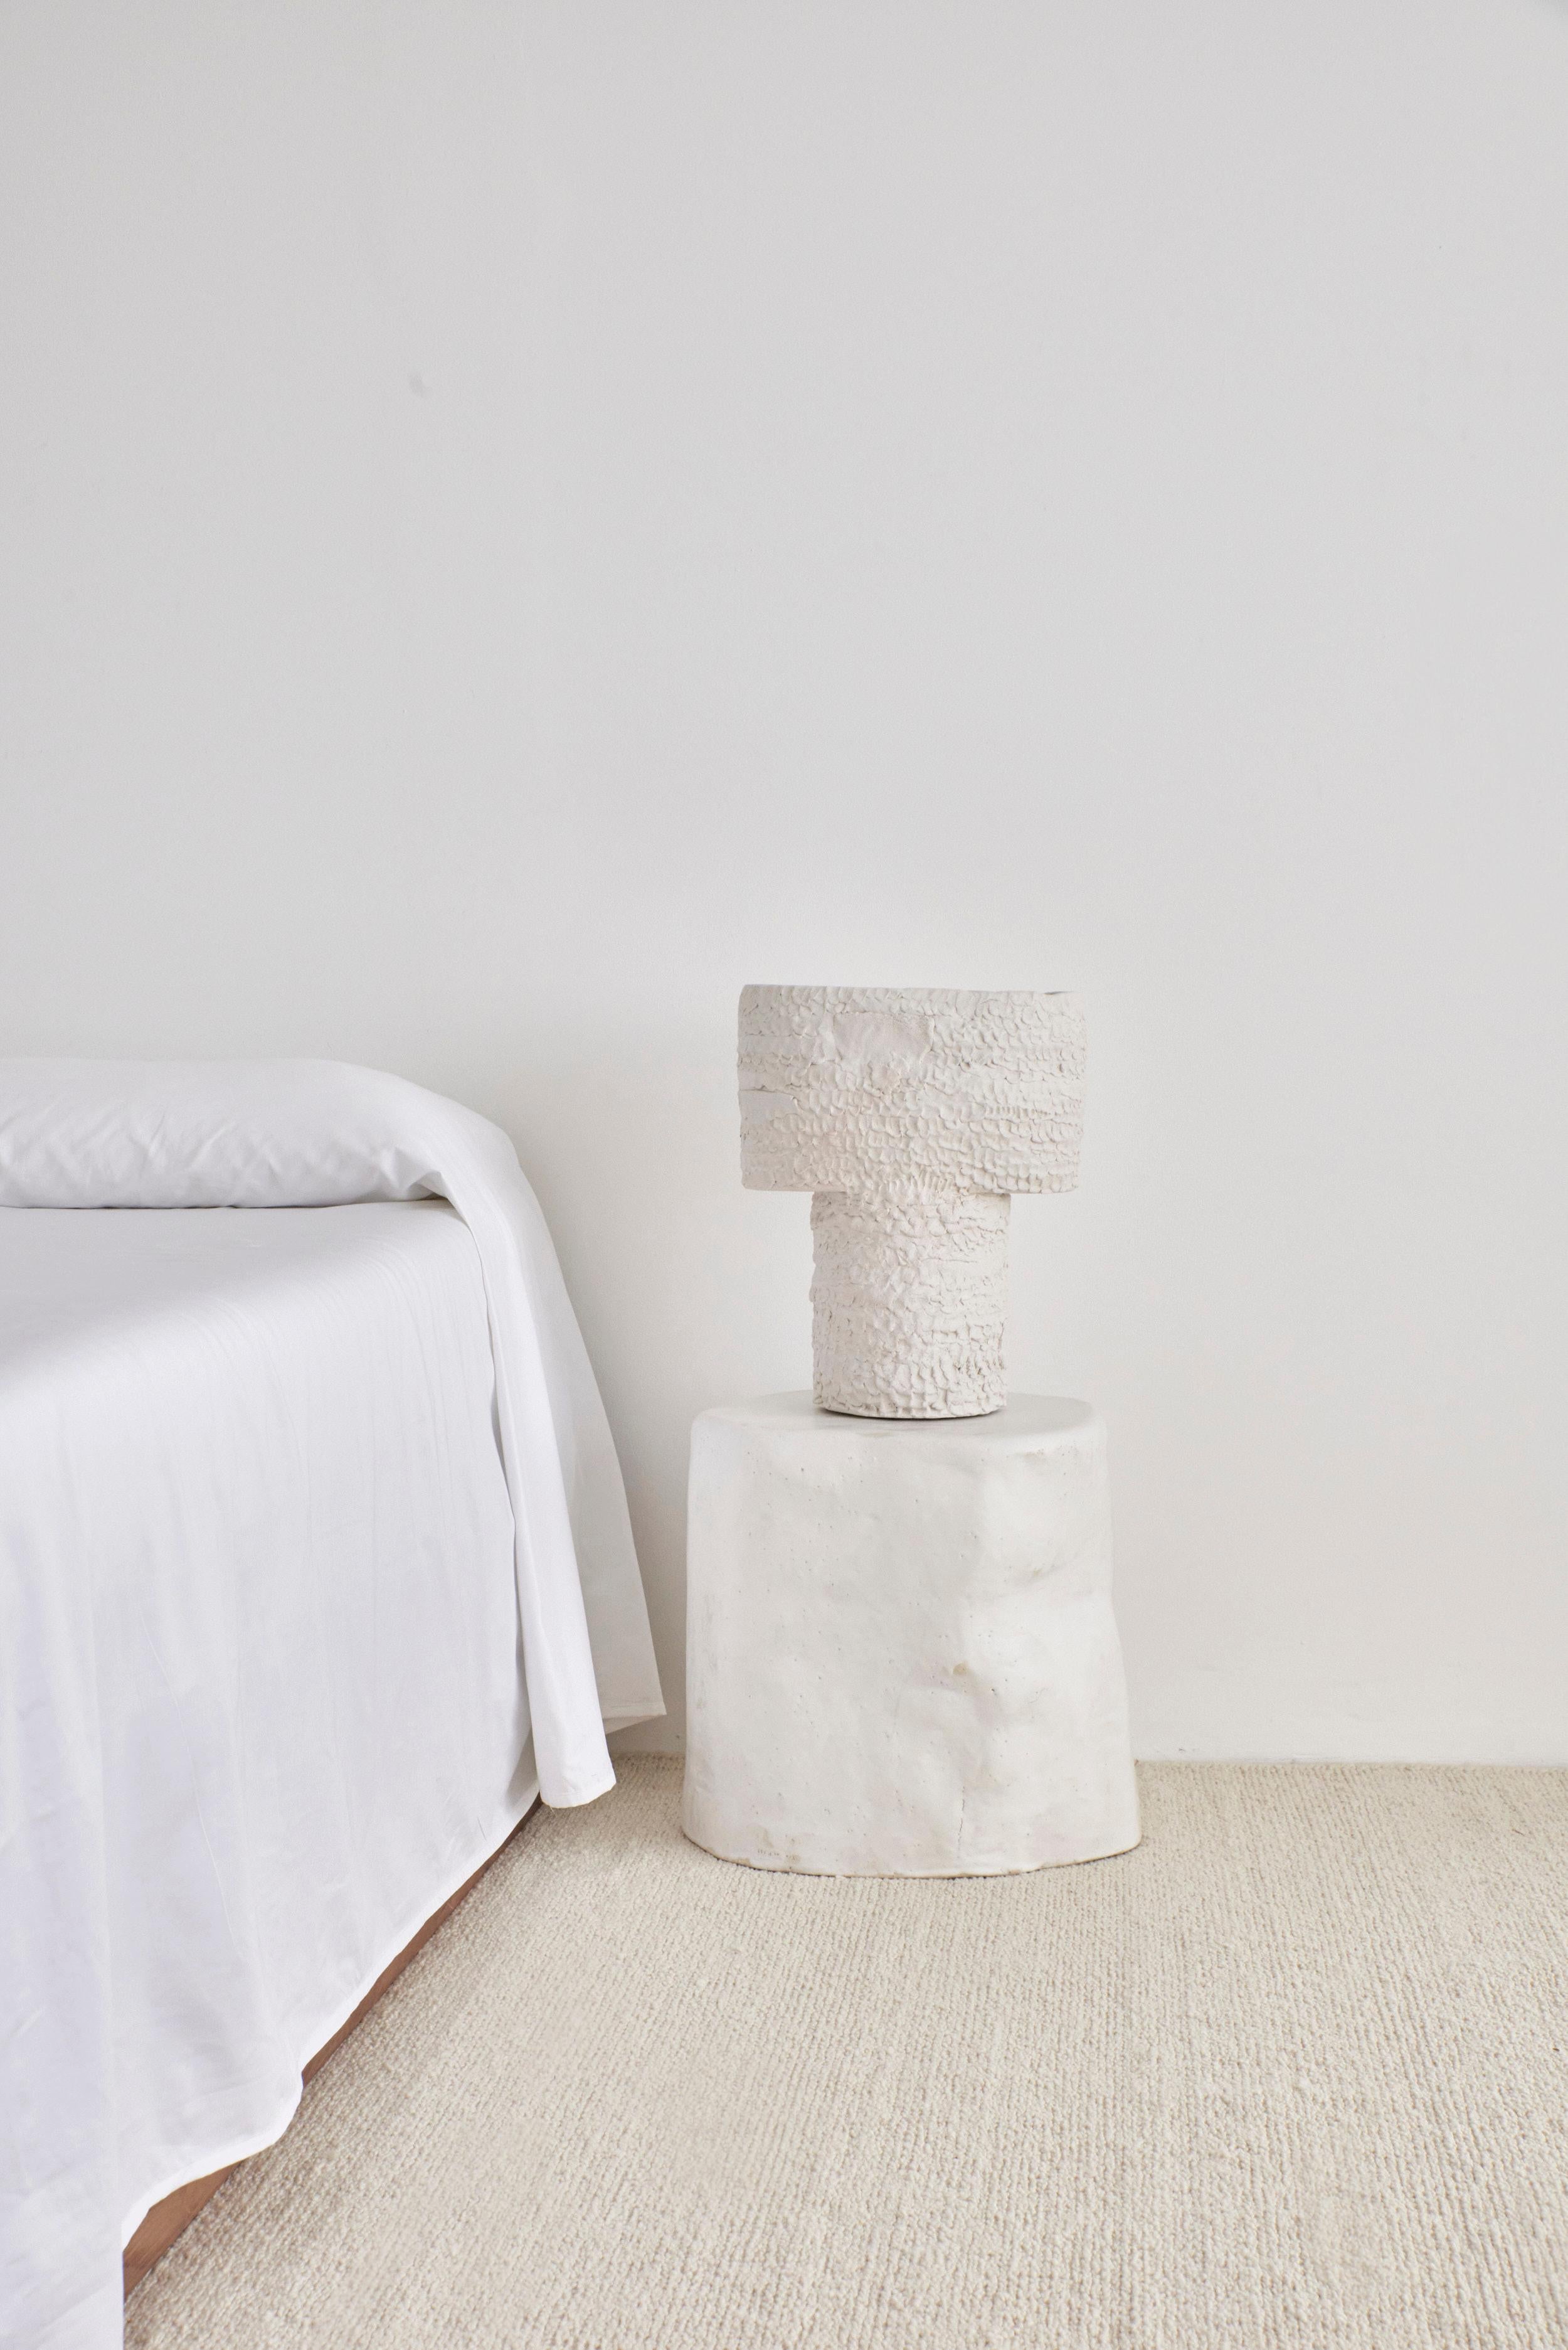 Casa Table Light Medium en blanc
Conçu par le project 213A en 2023

Lampe artisanale en céramique avec finition texturée, fabriquée dans l'atelier de céramique de Project 213A.
Chaque pièce est unique en raison de sa nature artisanale, les formes et